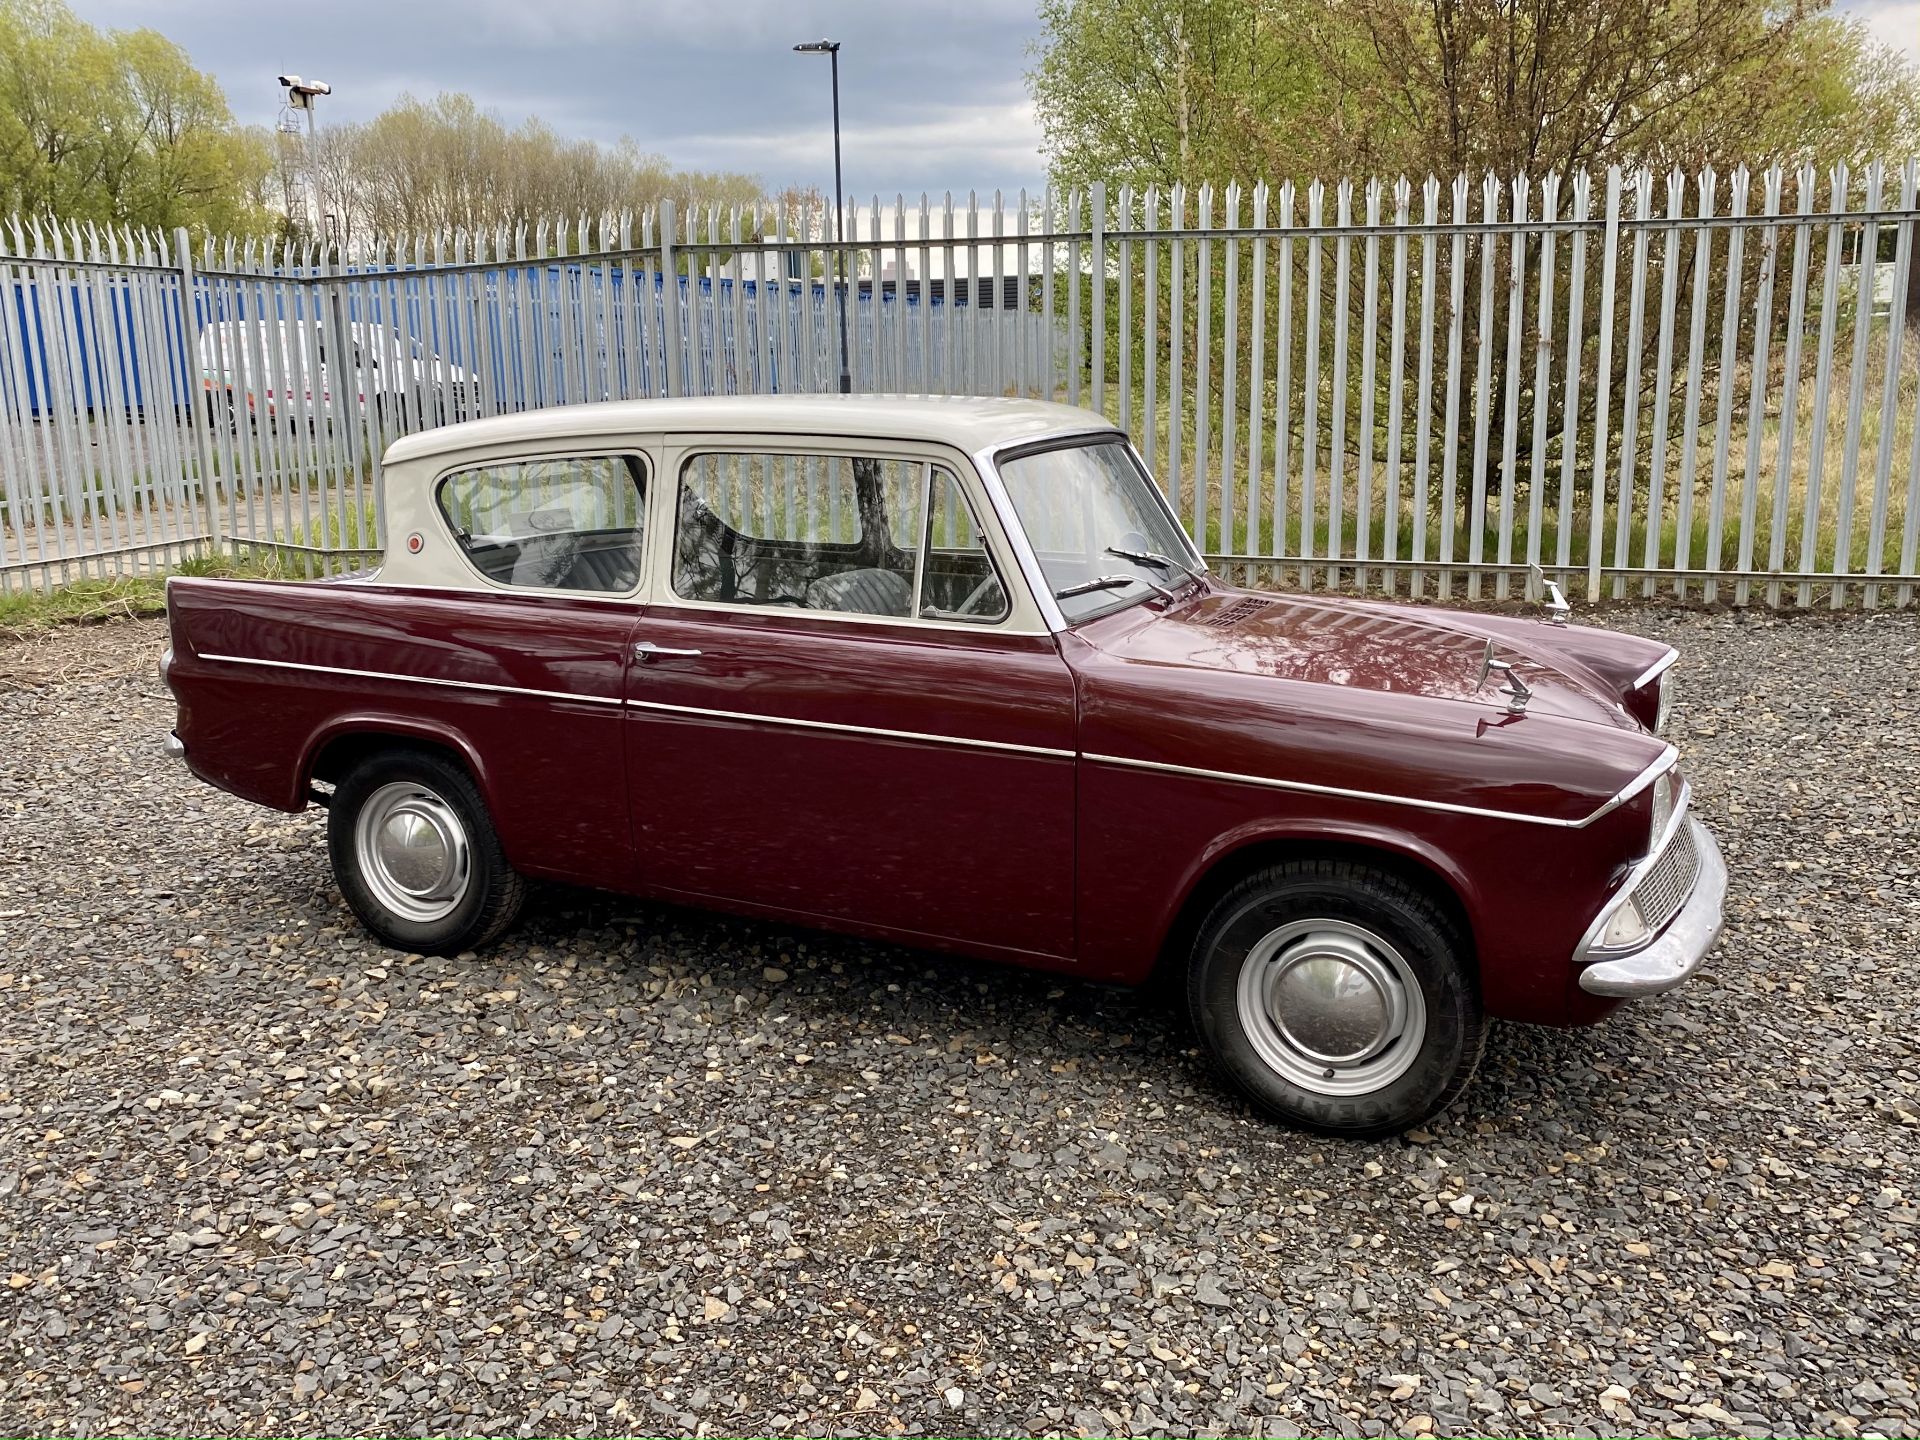 Ford Anglia - Image 3 of 41